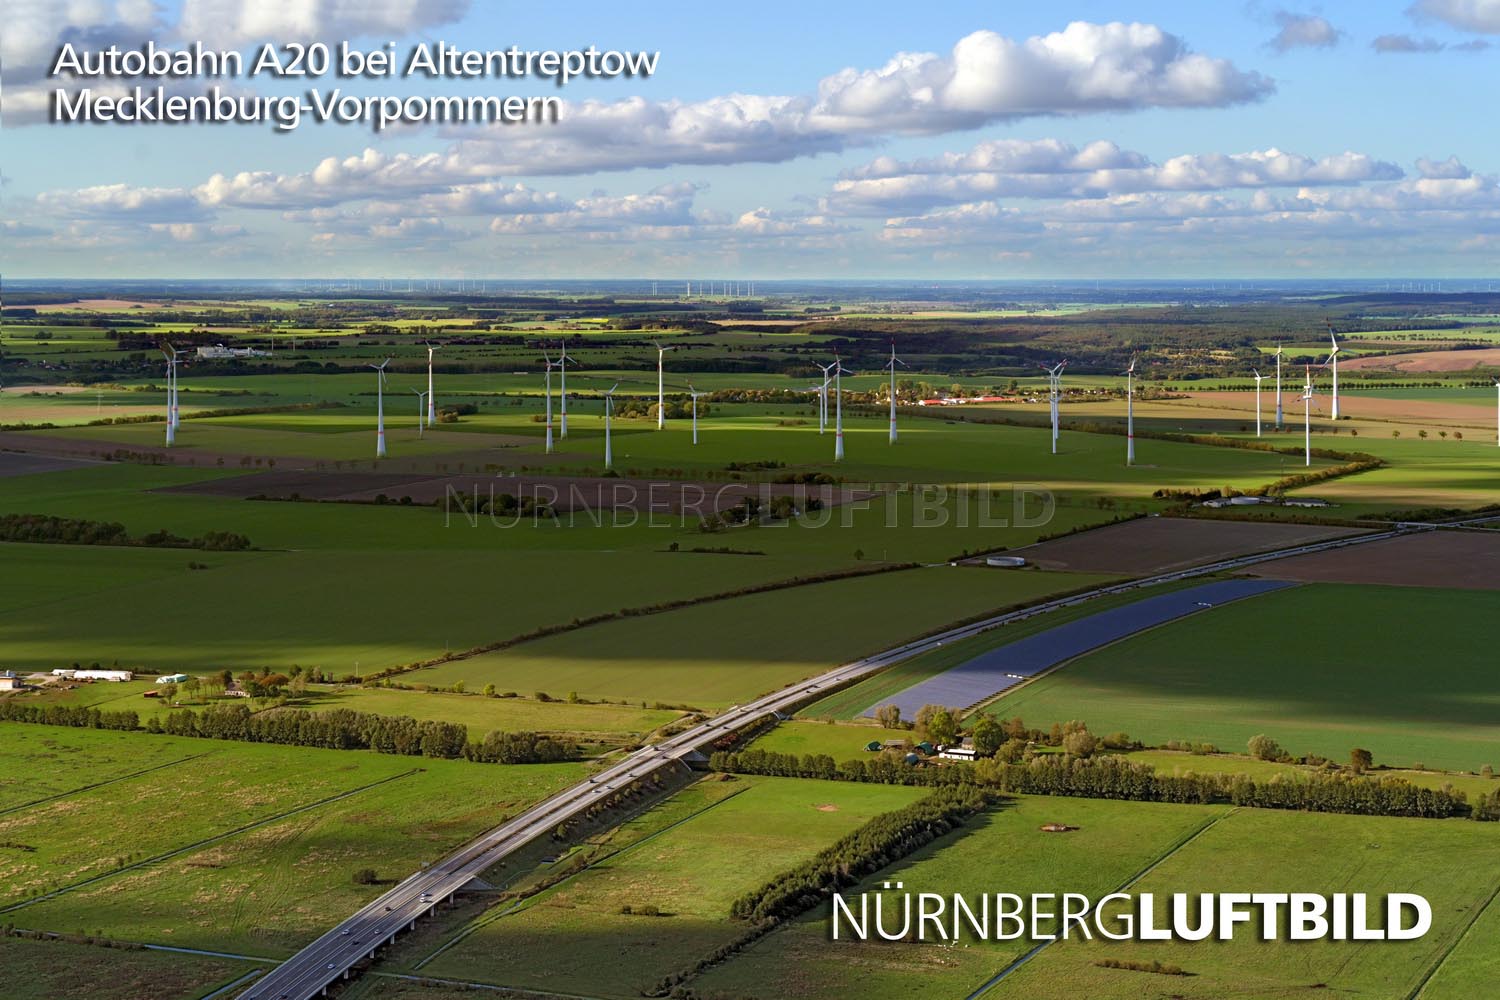 Autobahn A20 bei Altentreptow, Mecklenburg-Vorpommern